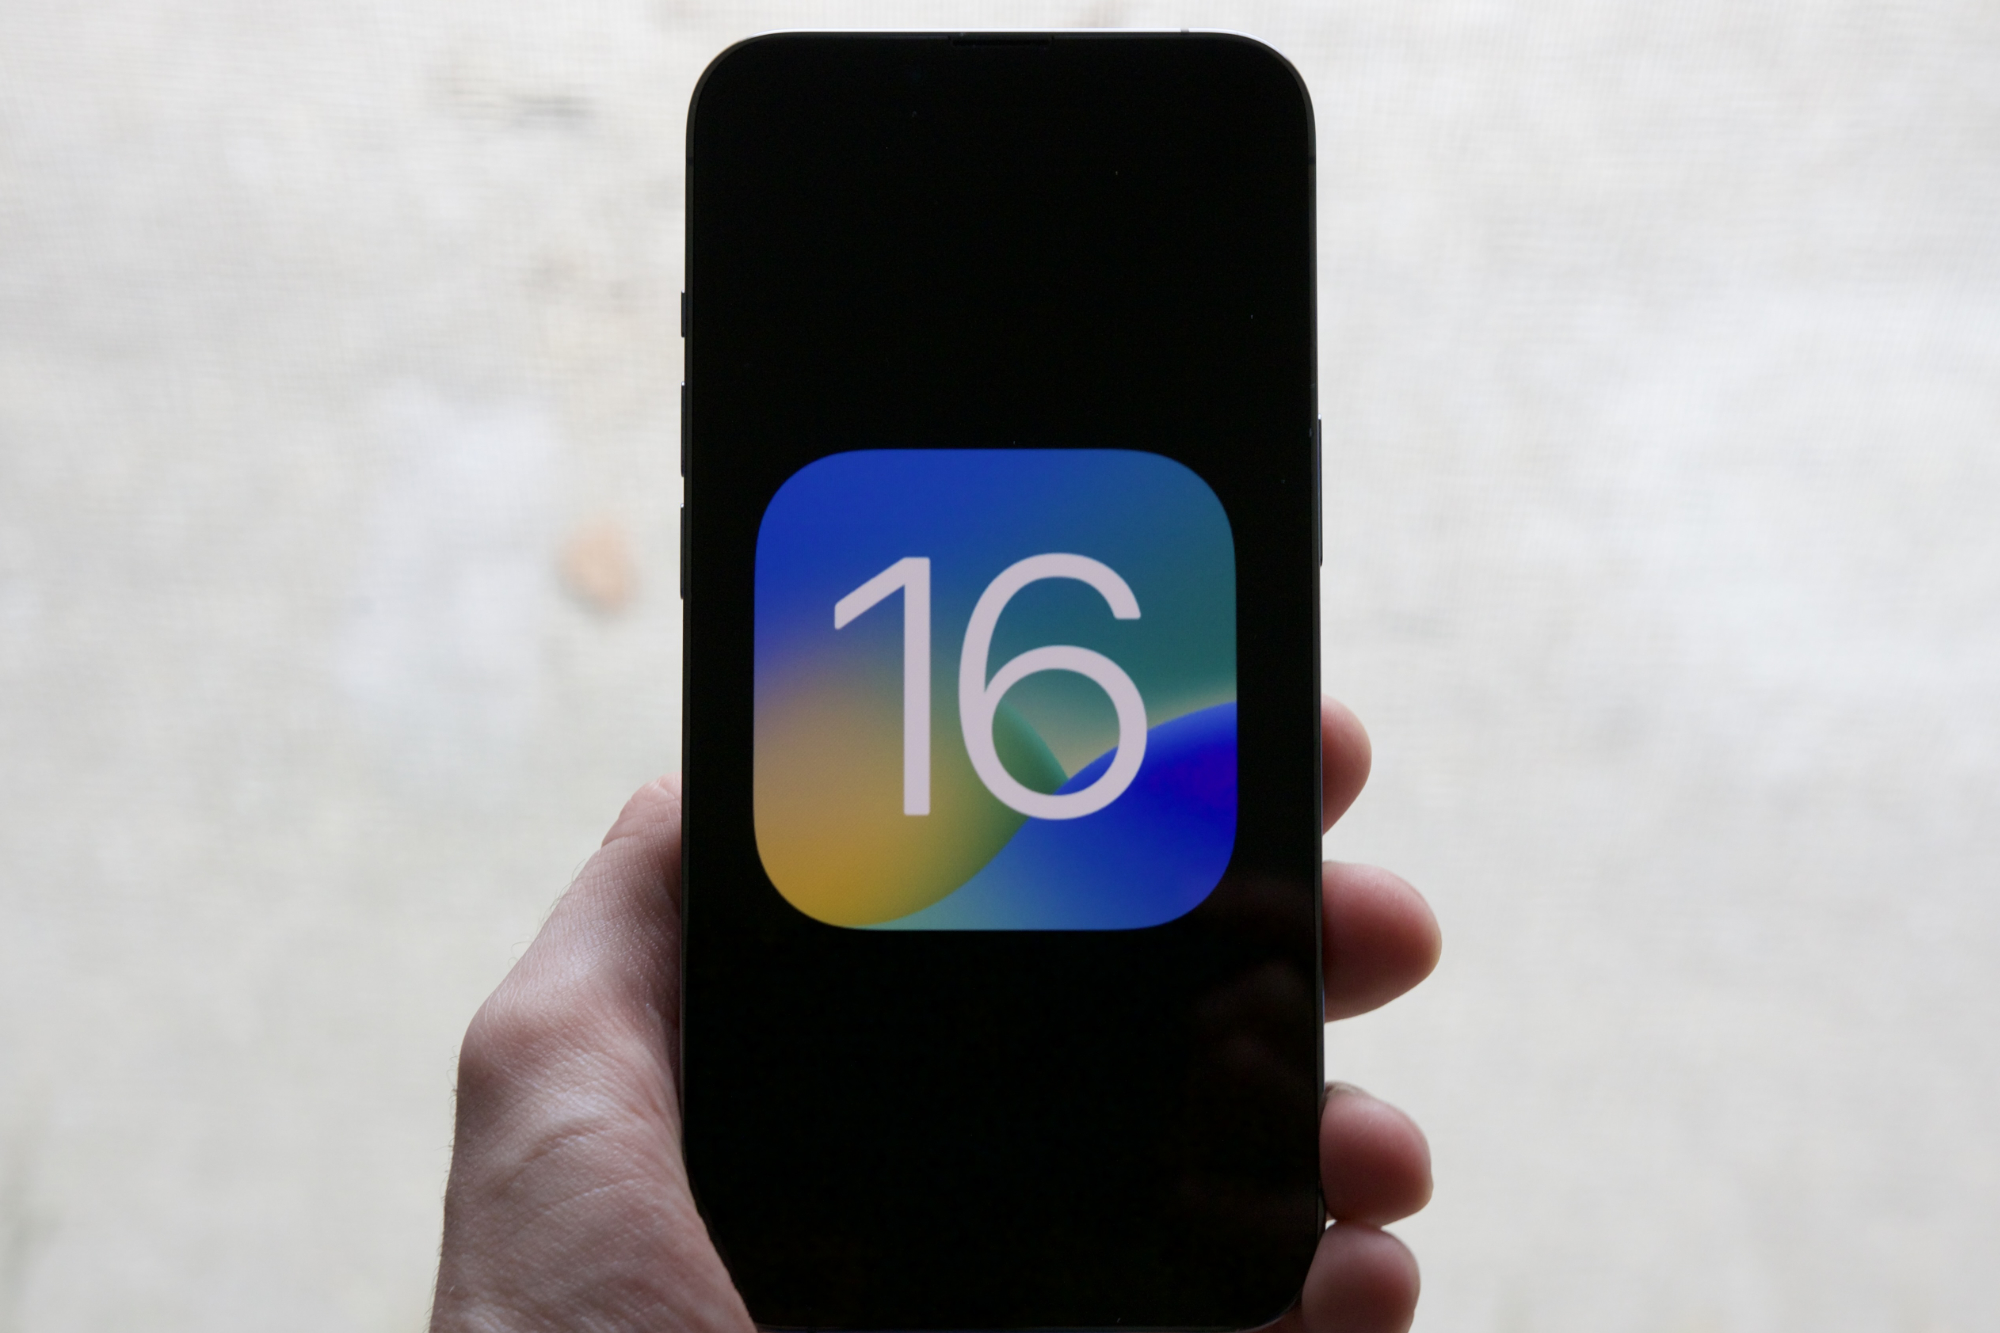 The iOS 16 logo on an iPhone.